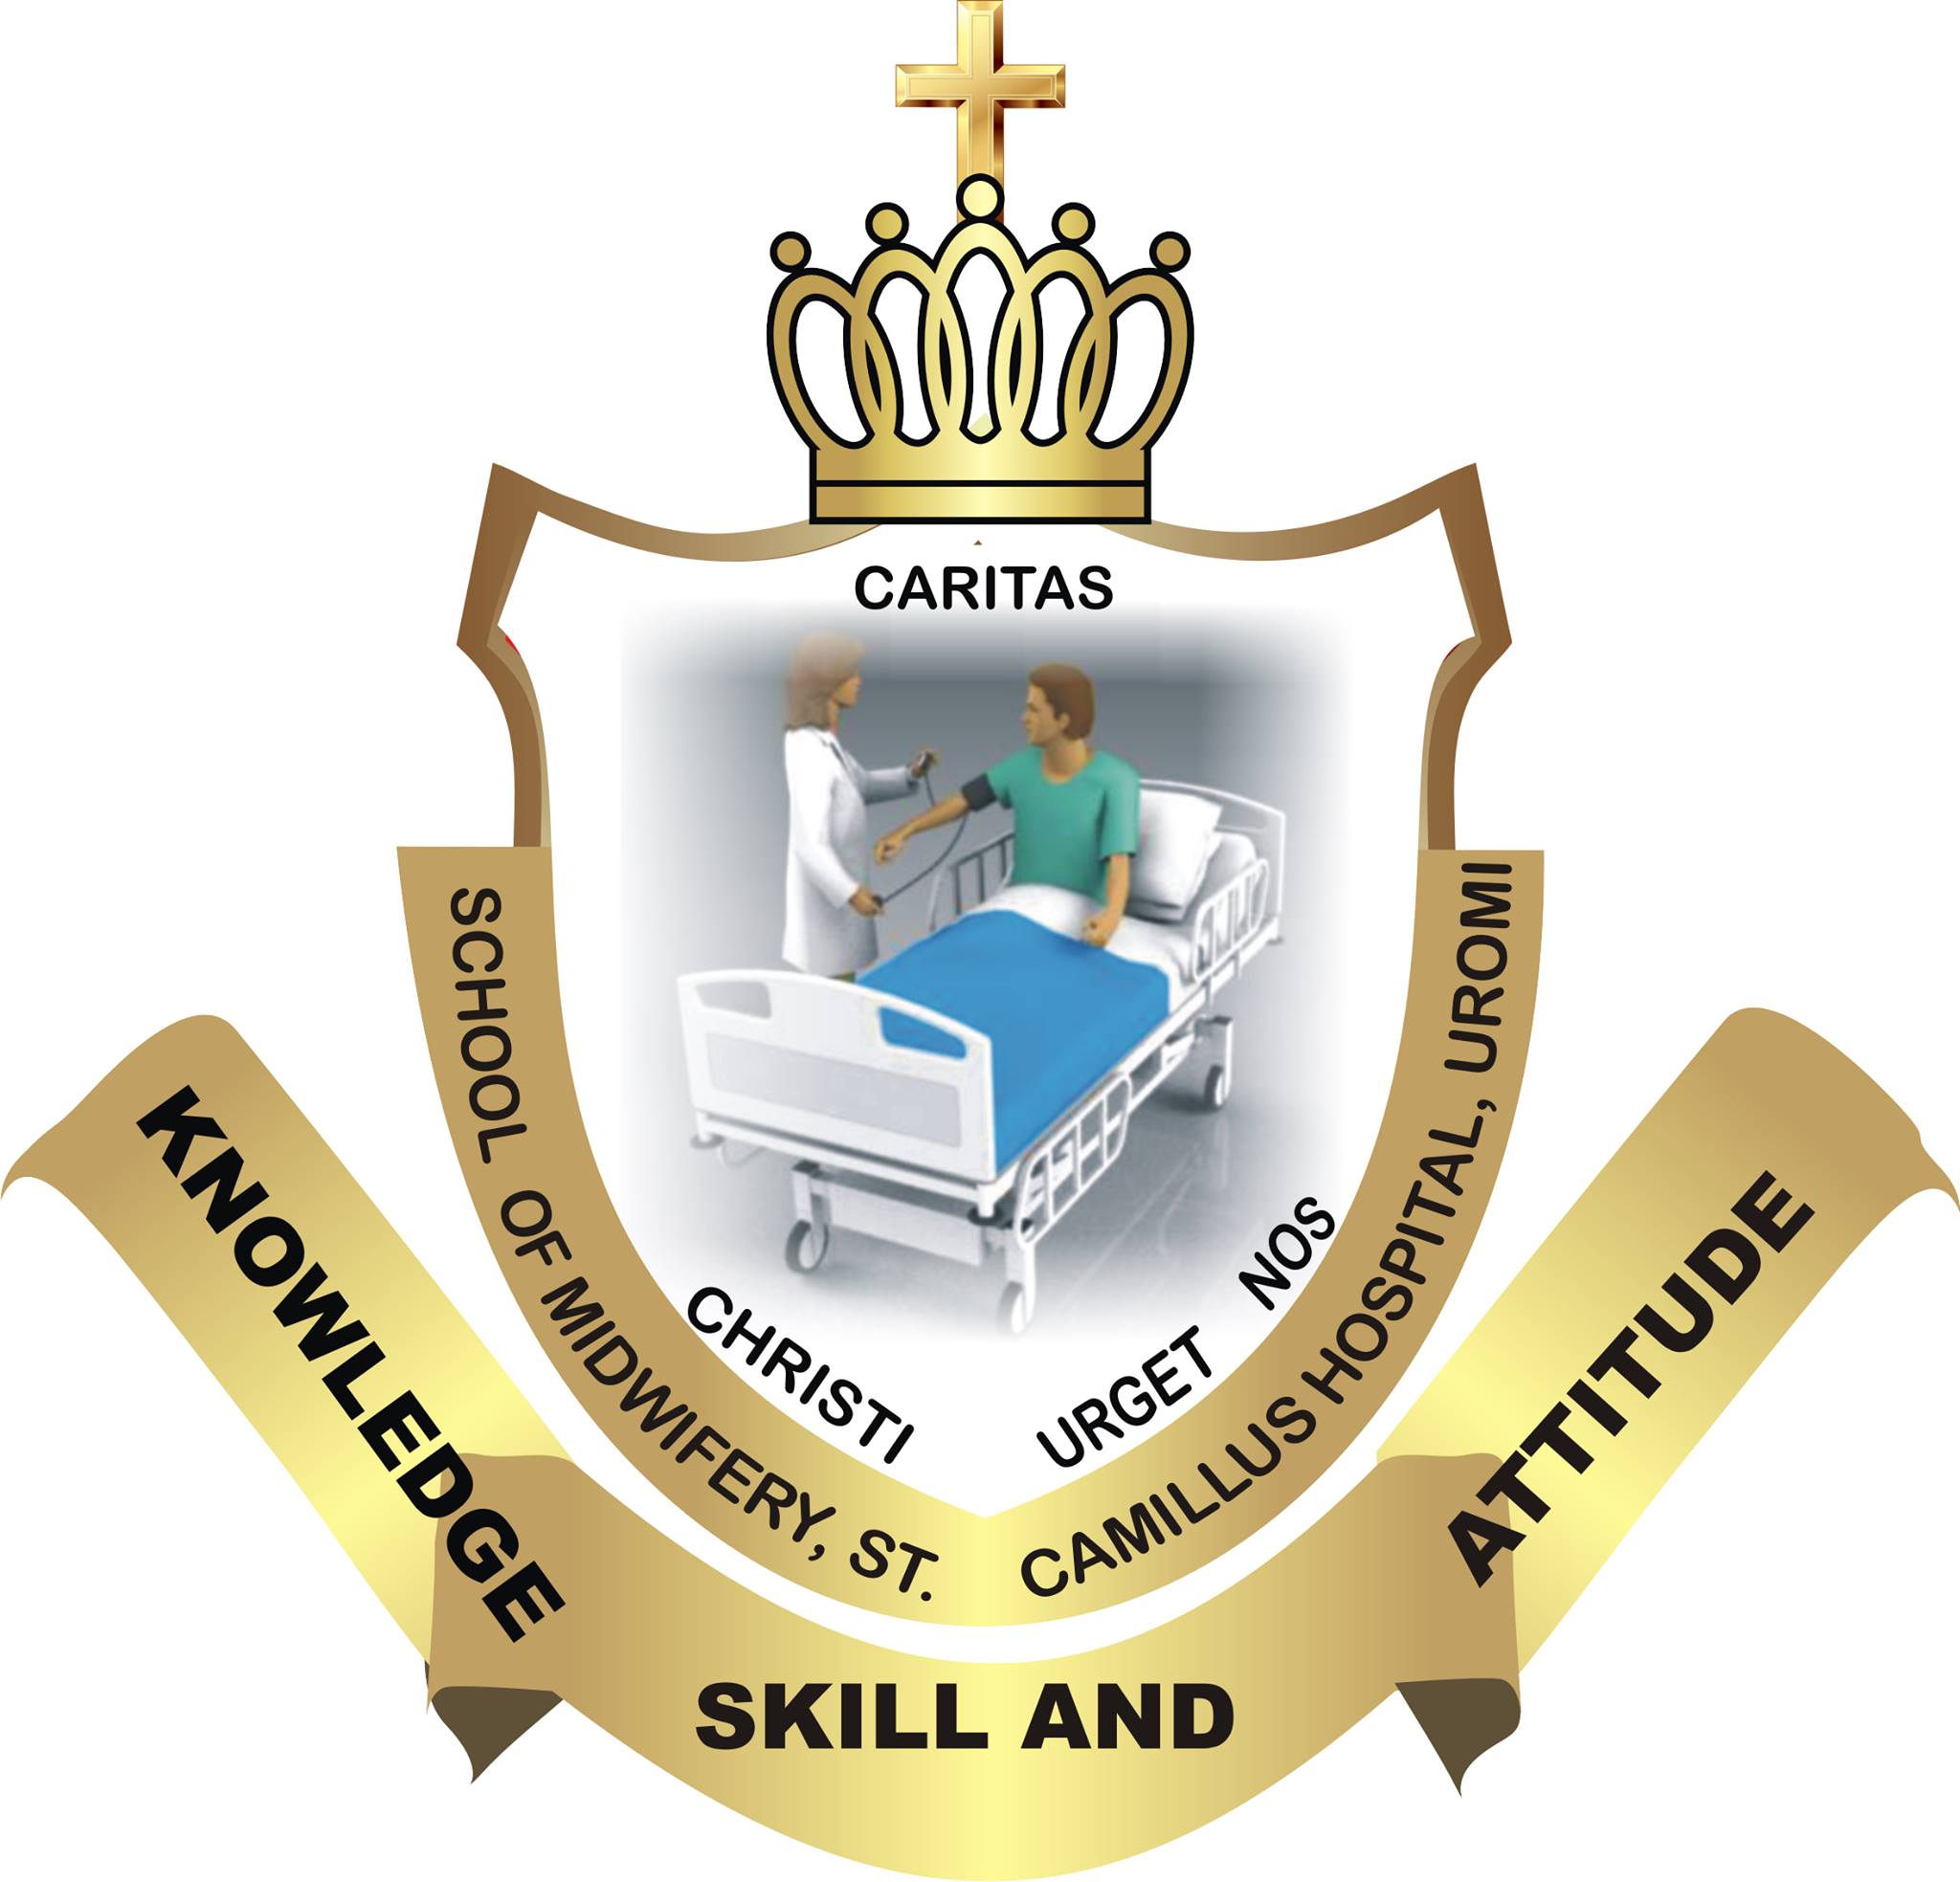 St. Camillus Hospital College of Nursing Sciences Basic Nursing Programme Admission